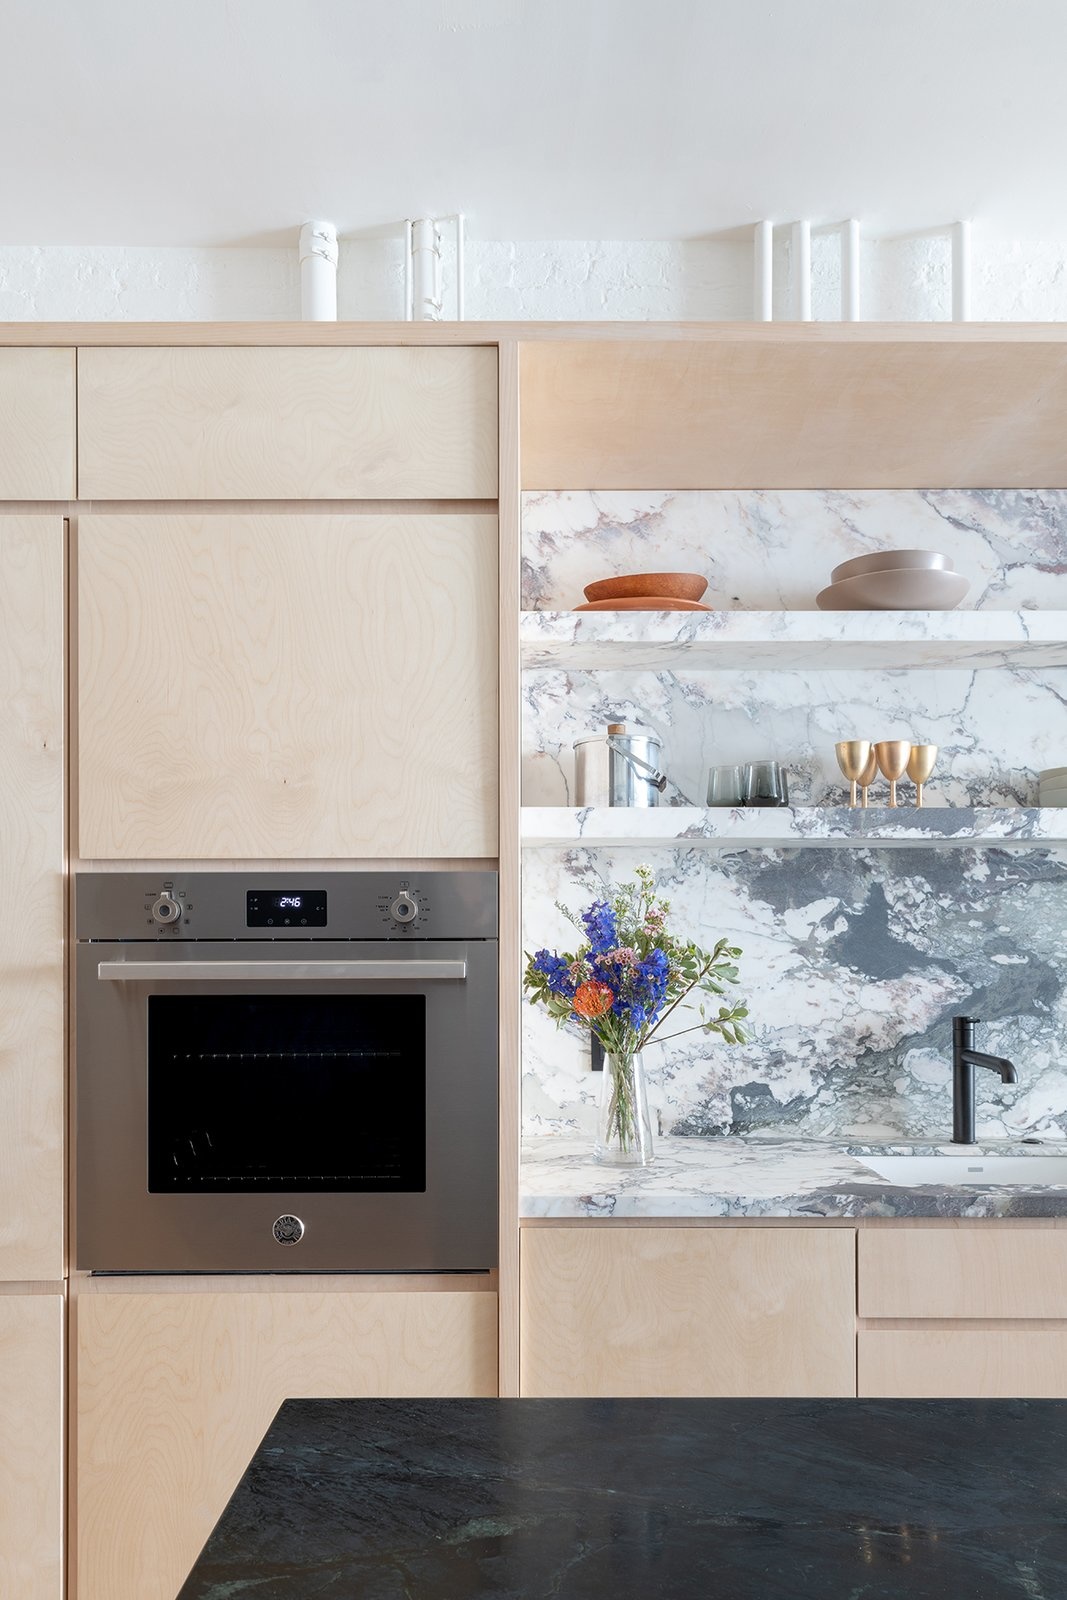 Phòng bếp do GLAM Studio thiết kế với sự kết hợp của hai vật liệu là ván ép cho hệ thống tủ lưu trữ và đá cẩm thạch. Sự mộc mạc, tươi sáng của gỗ nhạt màu với nét sang trọng của đá xám - trắng khiến căn bếp tinh tế vô cùng.